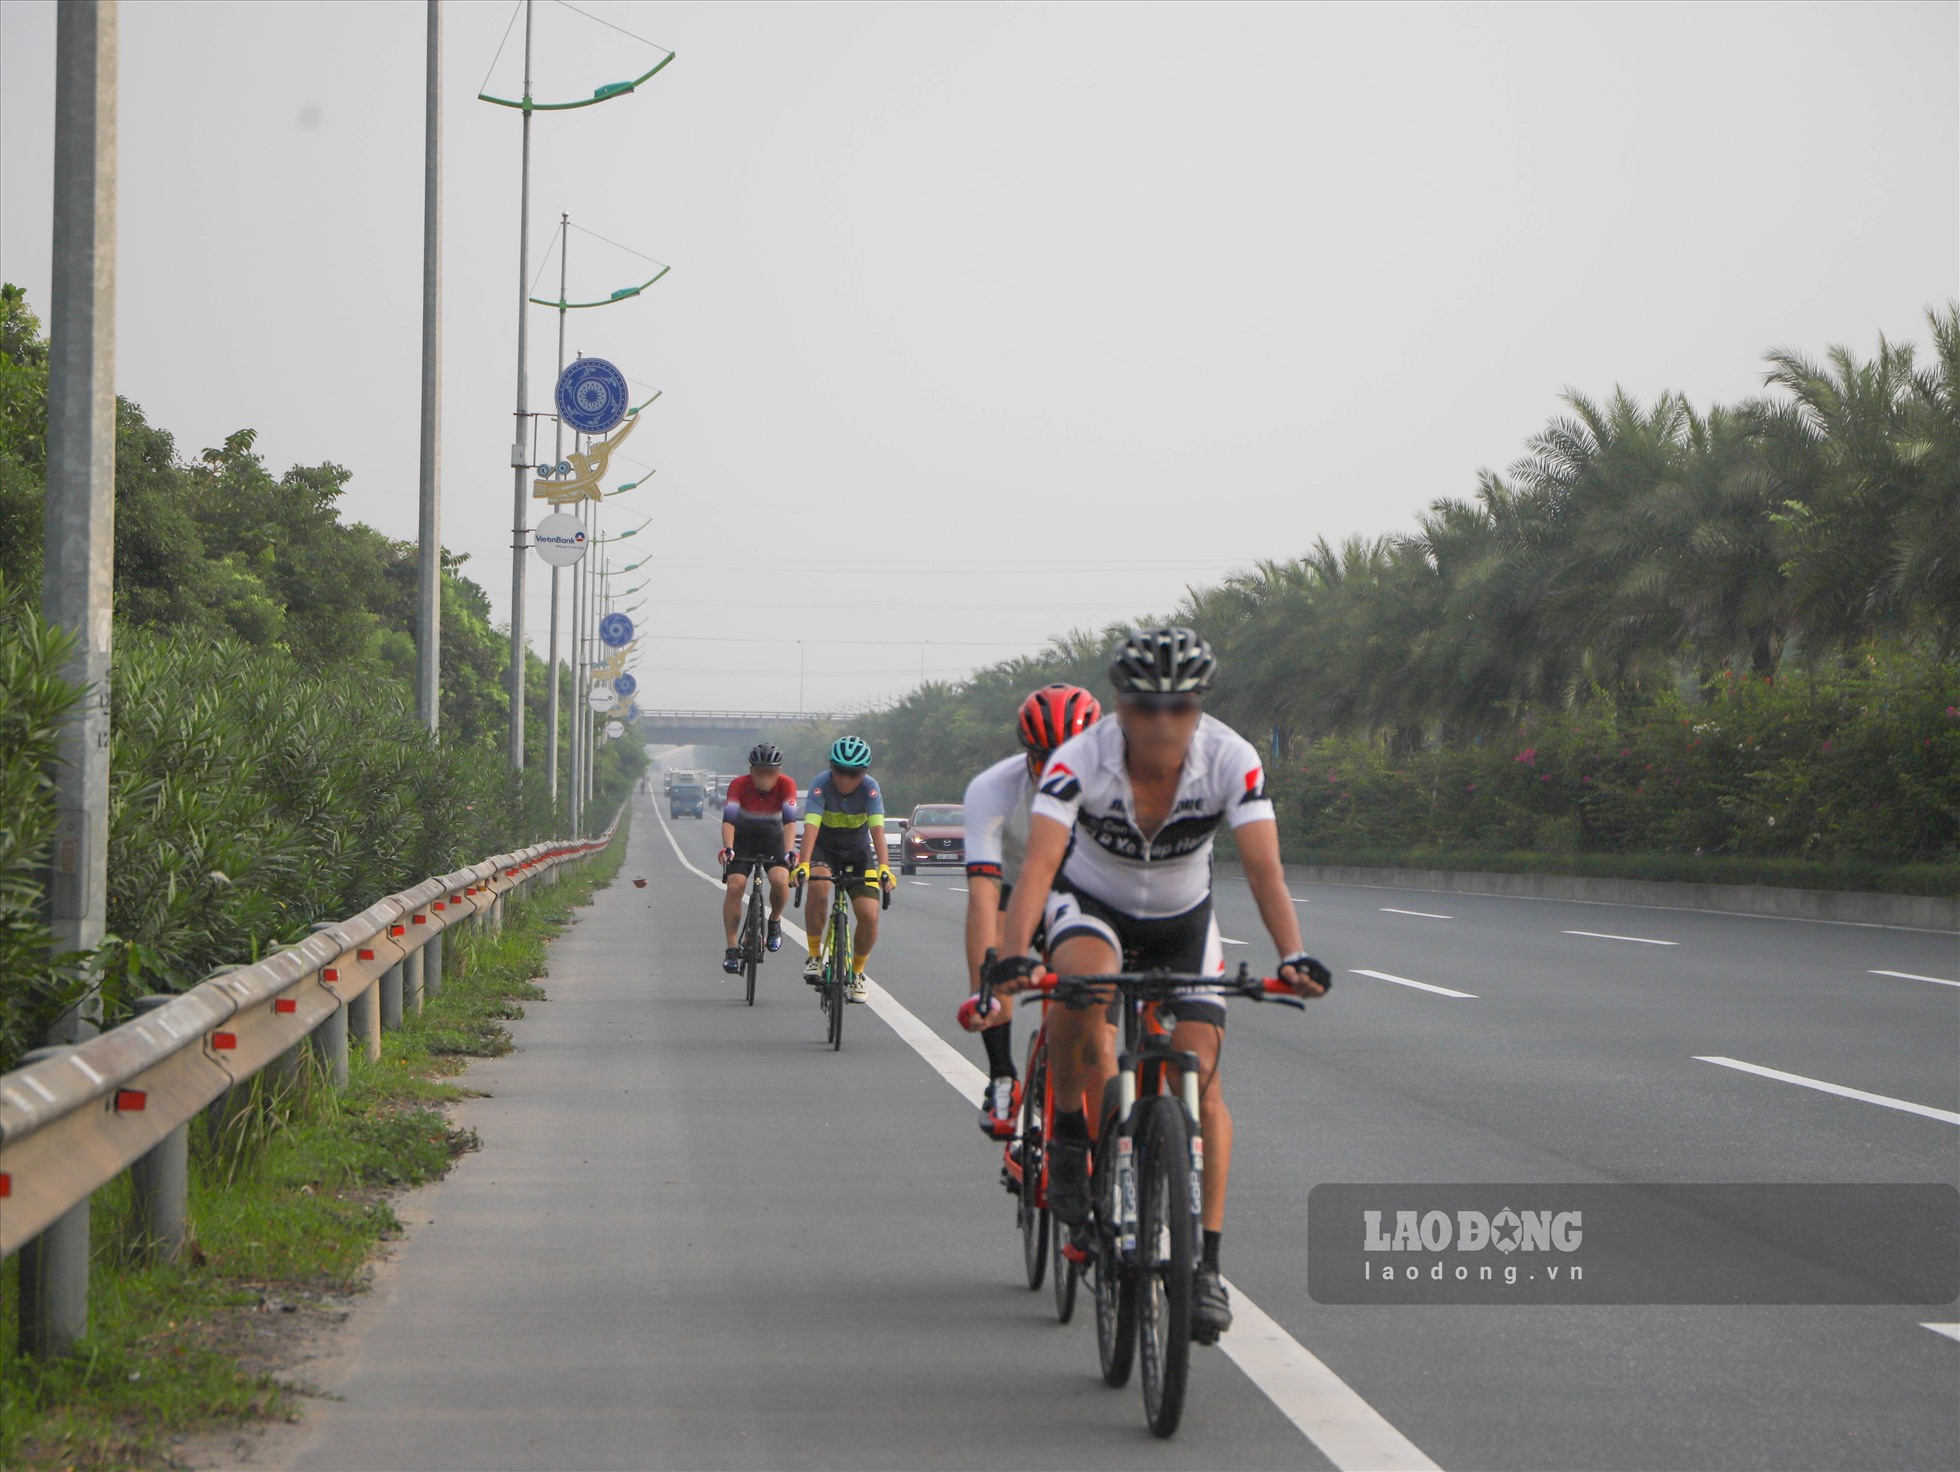 Theo anh Đức, một trong những nguyên nhân các đoàn đạp xe thường chọn tuyến đường này để luyện tập là do đường này rộng, không ùn tắc, mặt đường đẹp, trong bối cảnh Việt Nam hiện chưa có làn đường dành riêng cho xe đạp.